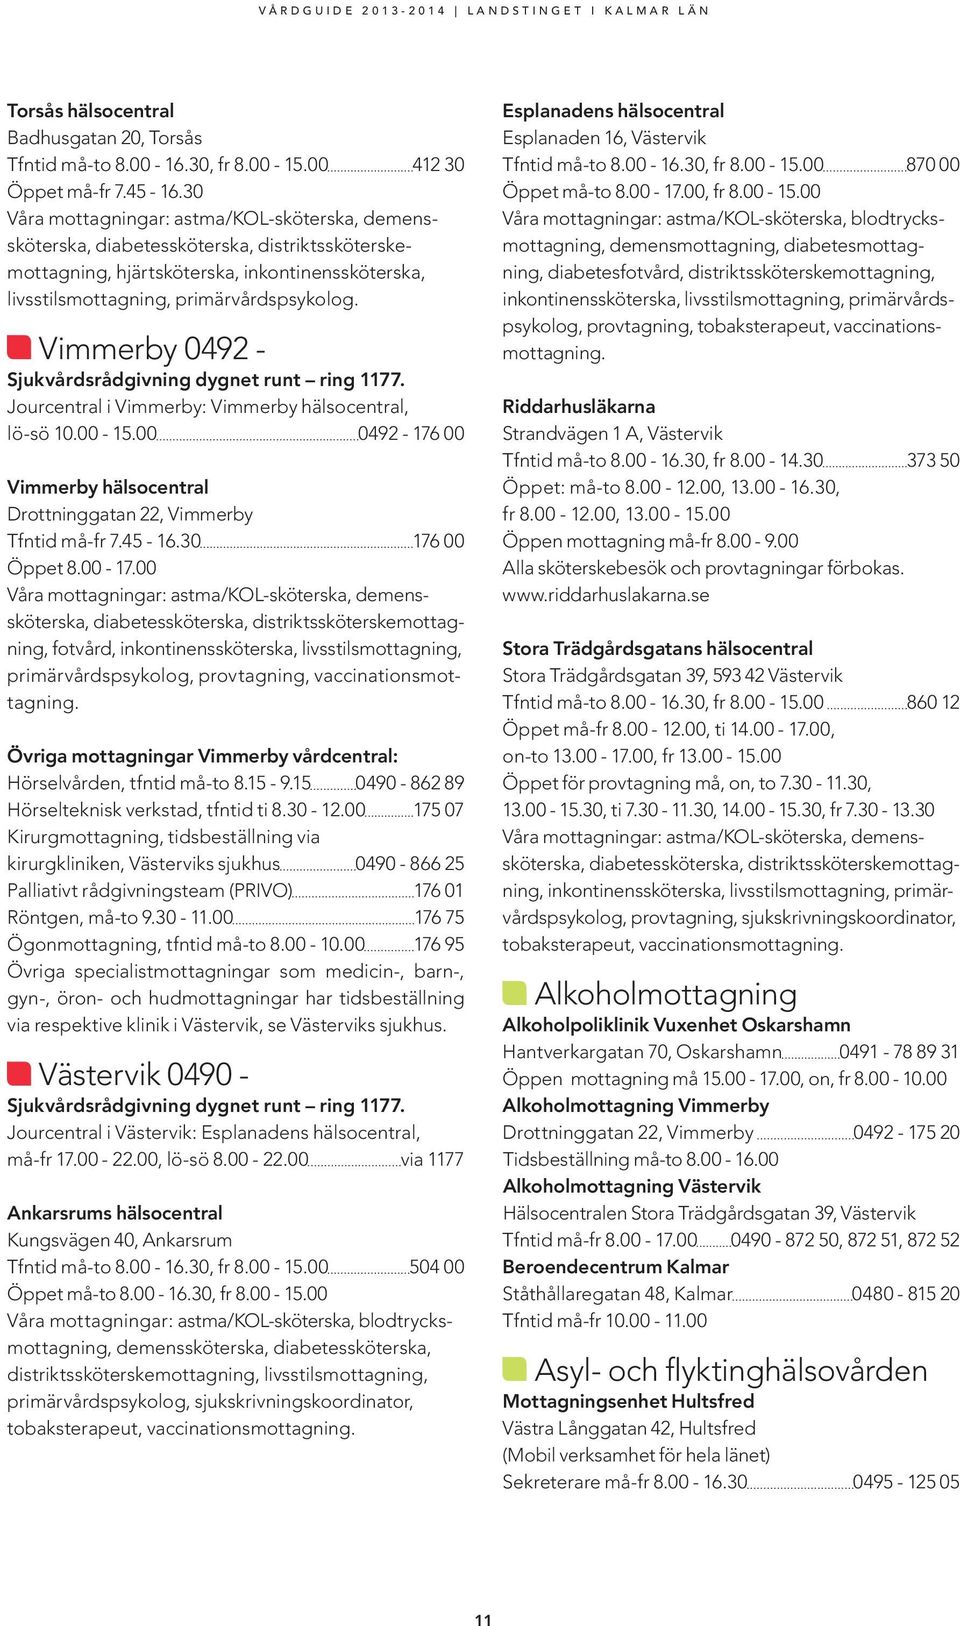 Vimmerby 0492 - Sjukvårdsrådgivning dygnet runt ring 1177. Jourcentral i Vimmerby: Vimmerby hälsocentral, lö-sö 10.00-15.